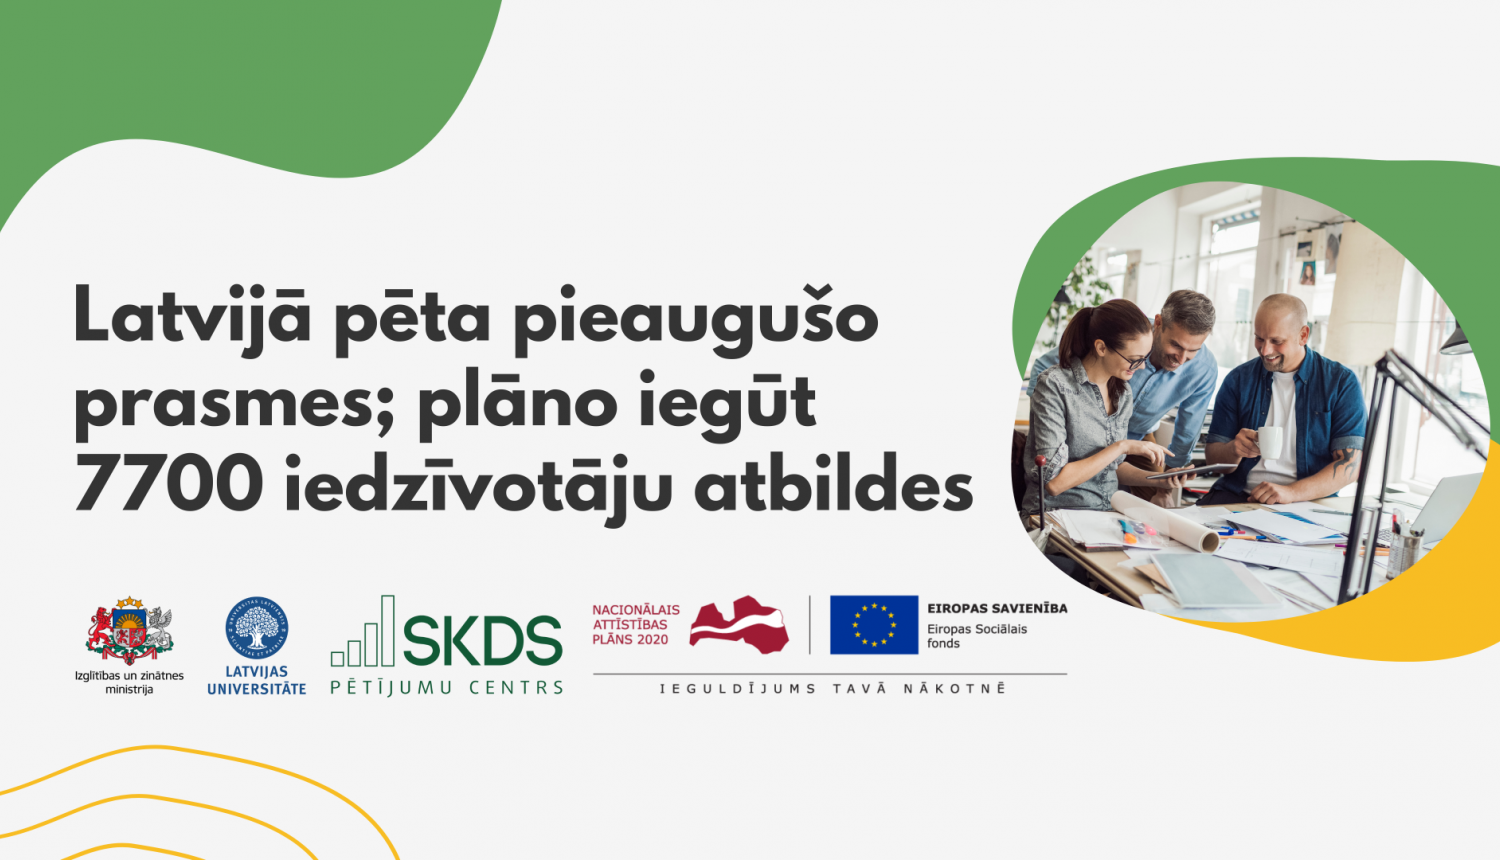 Latvijā pēta pieaugušo prasmes (OECD PIAC projekts)